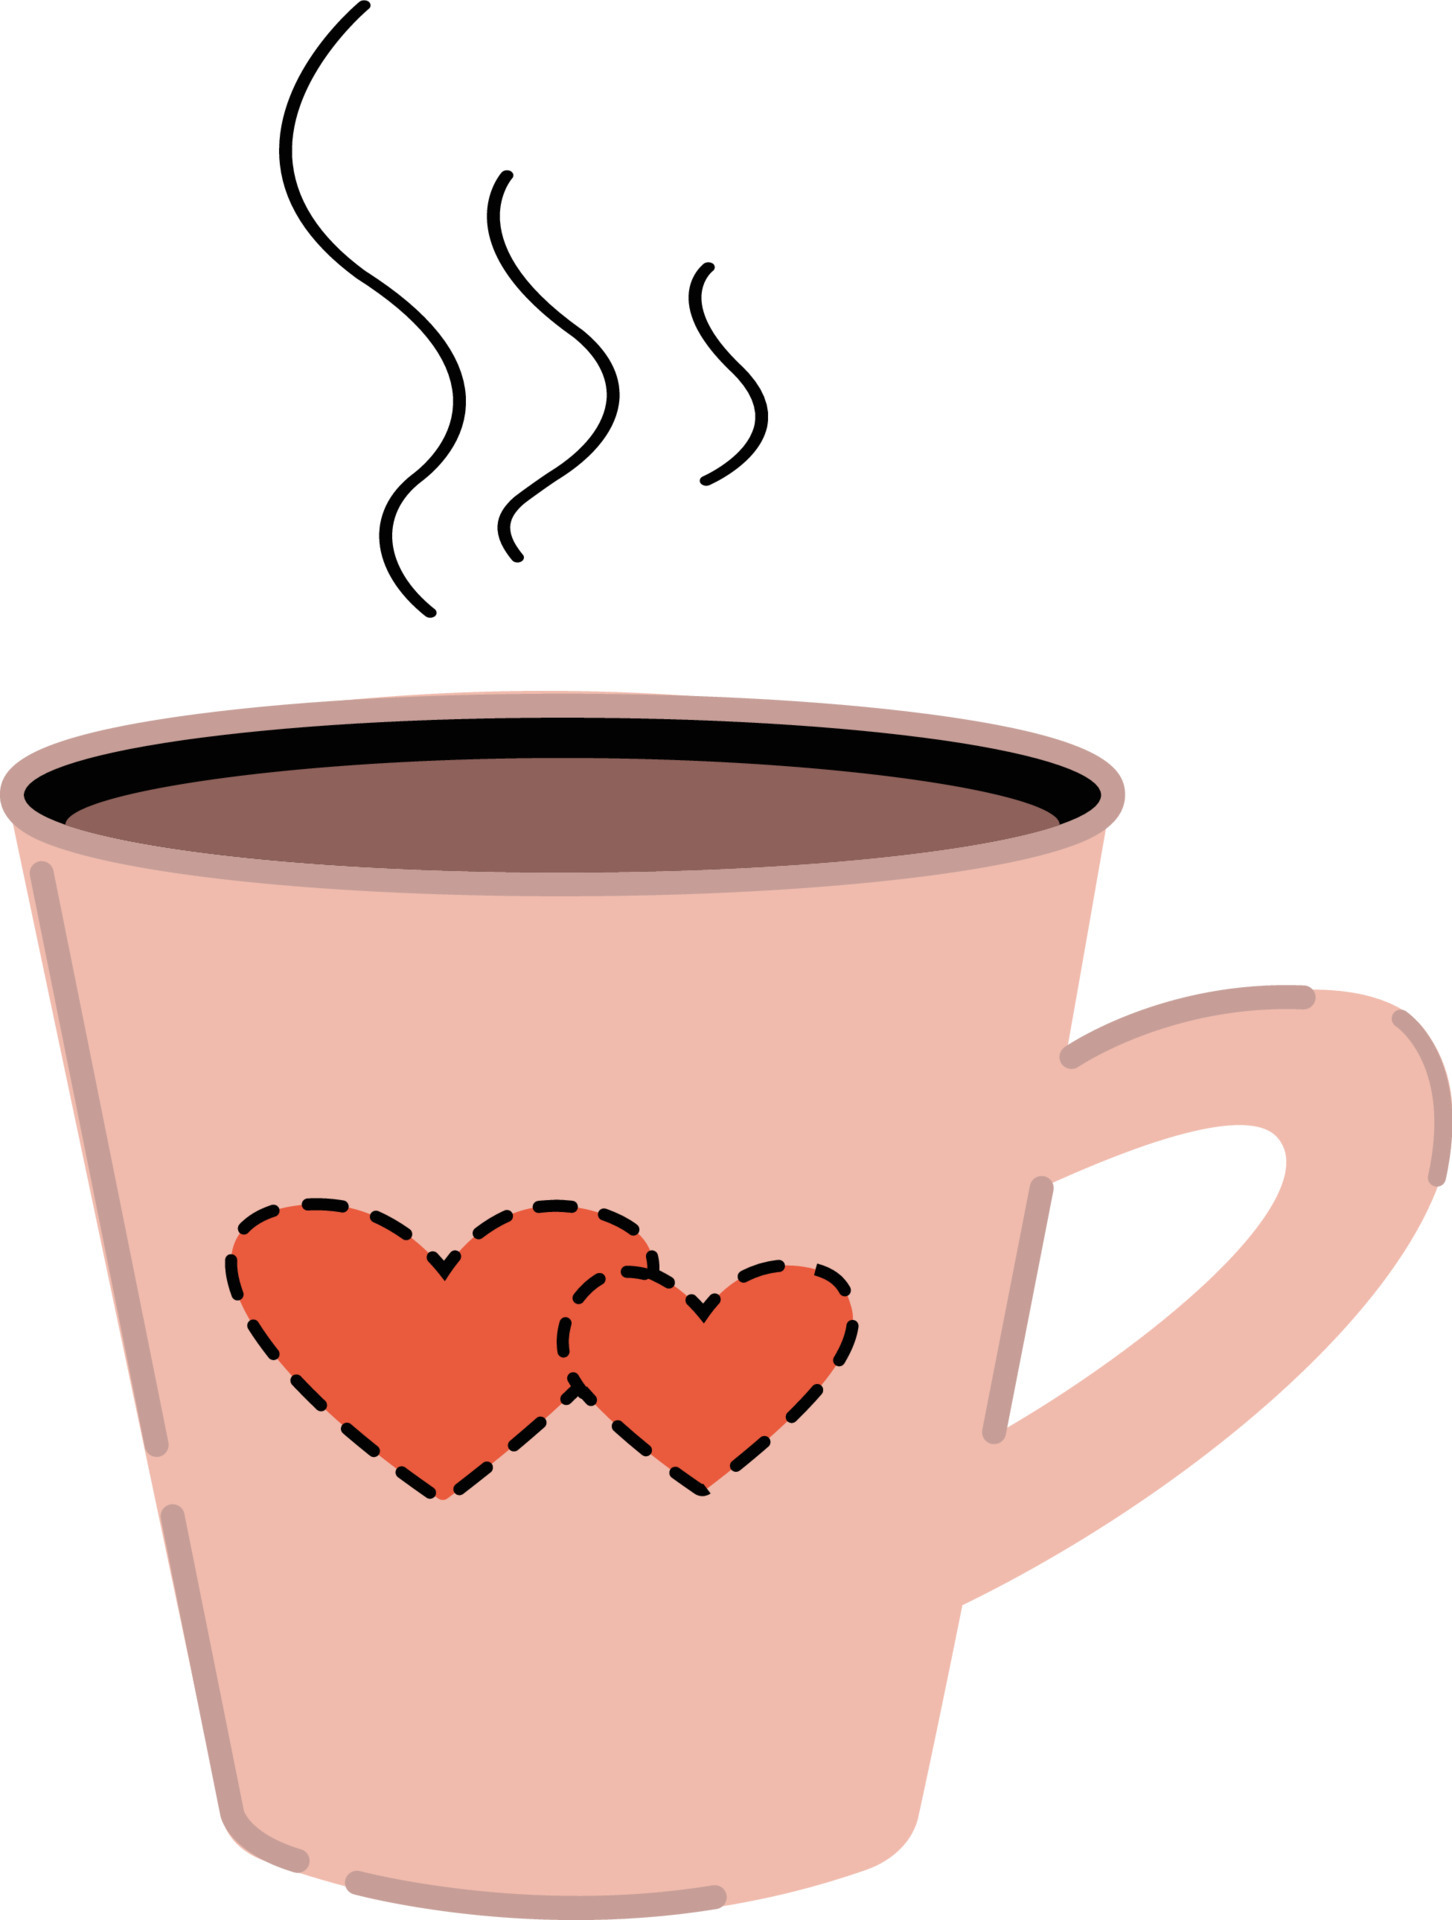 afbeelding van een kopje thee of koffie. vectorillustratie voor Valentijnsdag, verjaardag. decor voor website, mobiele app, iconen, ansichtkaarten, kinder- en kookboeken, reclame. 6624622 - Download Free Vectors, Vector Bestanden ...